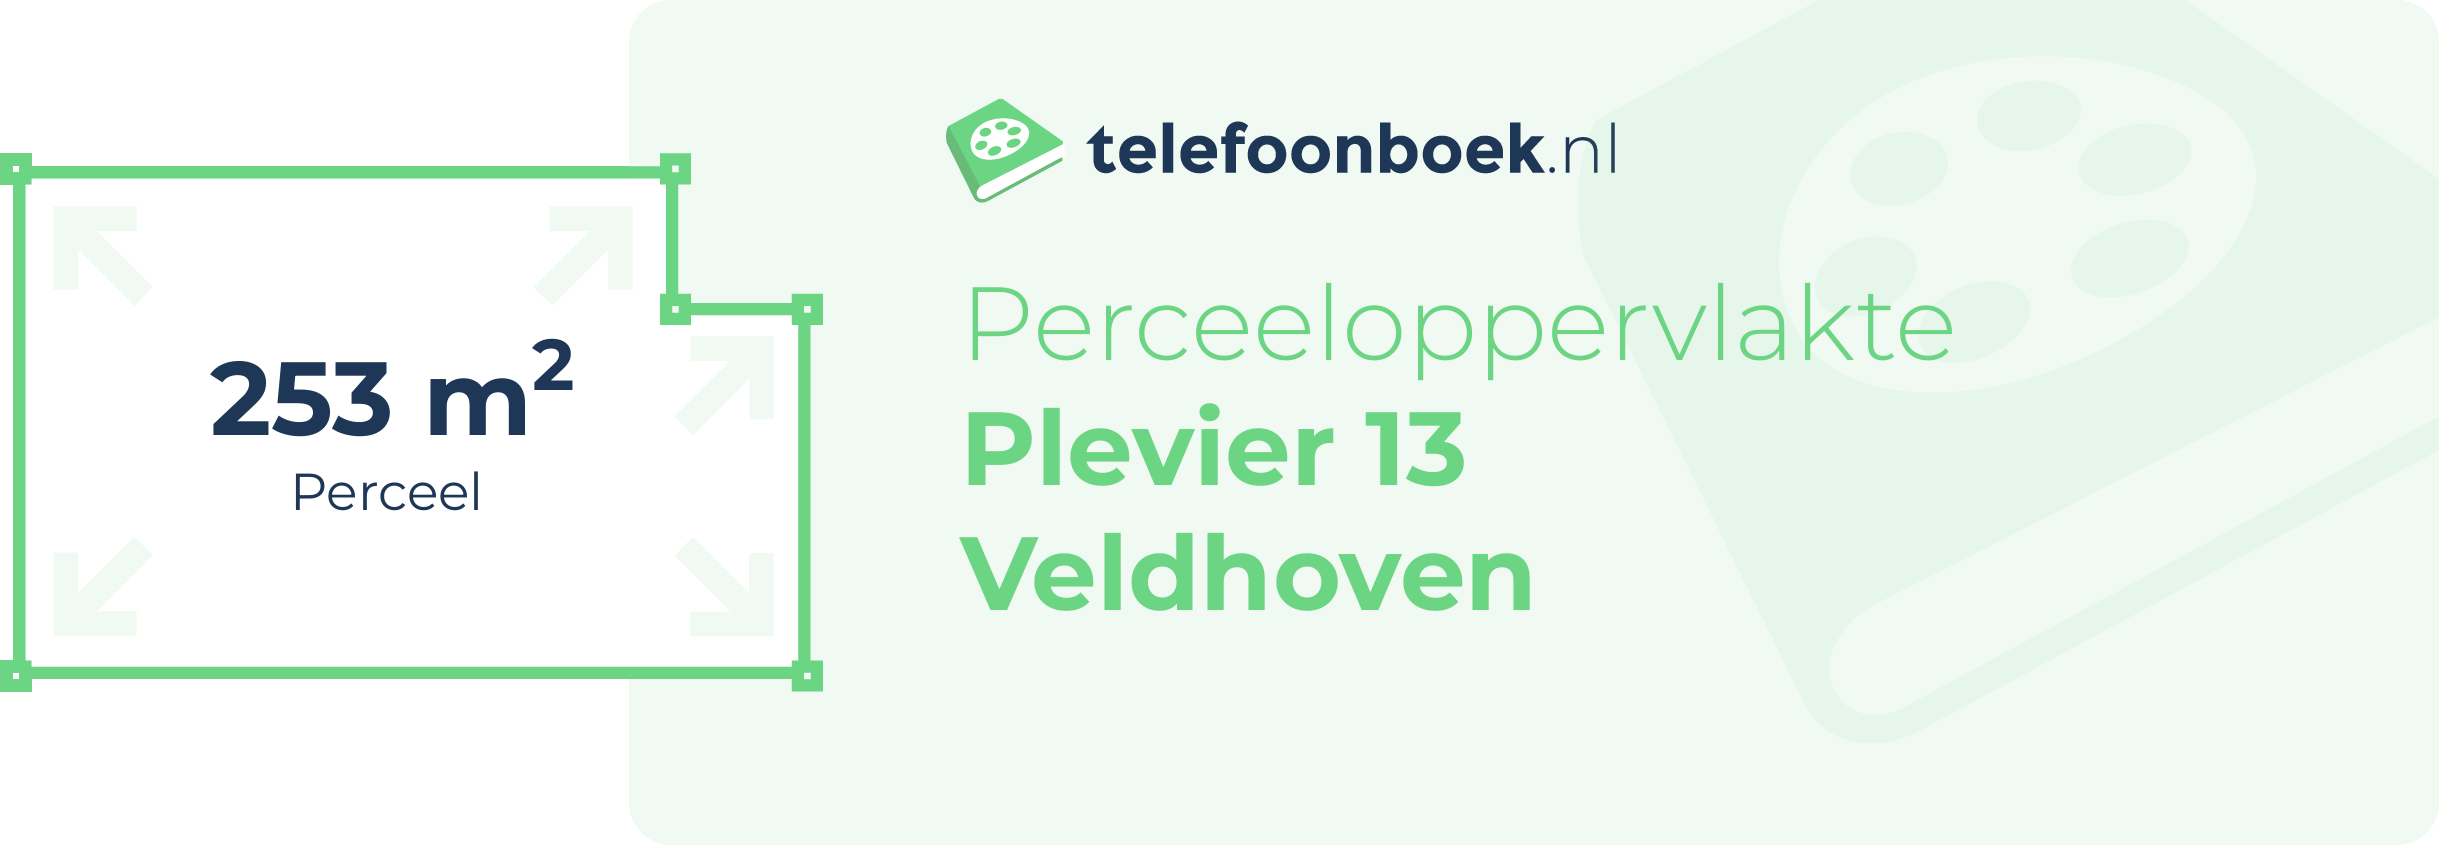 Perceeloppervlakte Plevier 13 Veldhoven